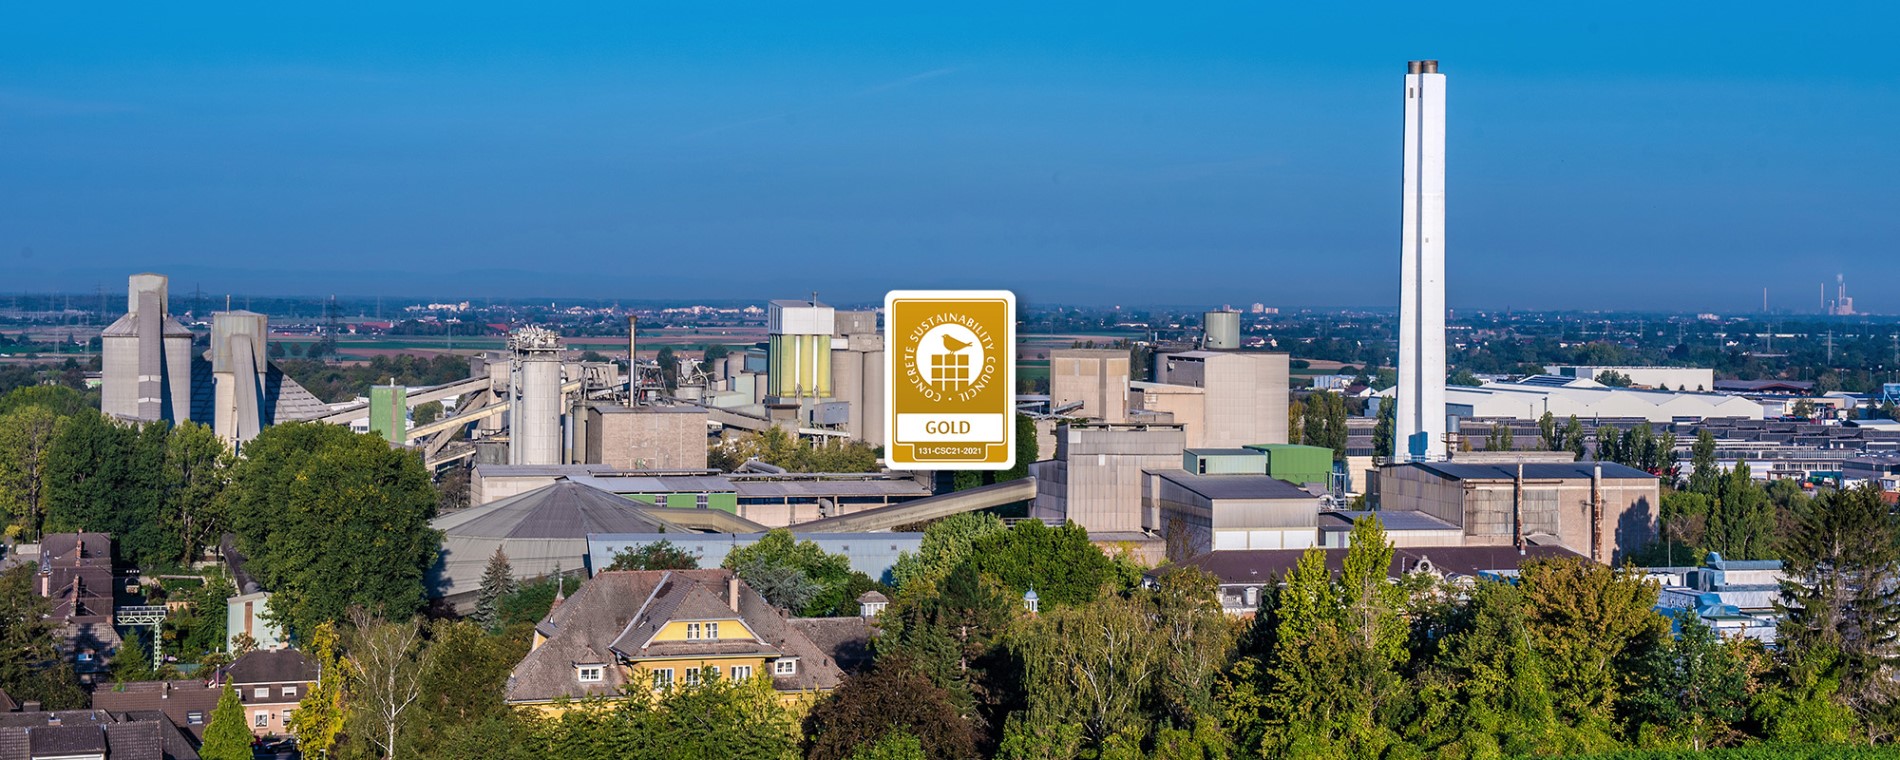 Das Zementwerk Leimen – Markenzeichen für eine leistungsfähige Produktion und Teil lebendiger Geschichte in der Region.